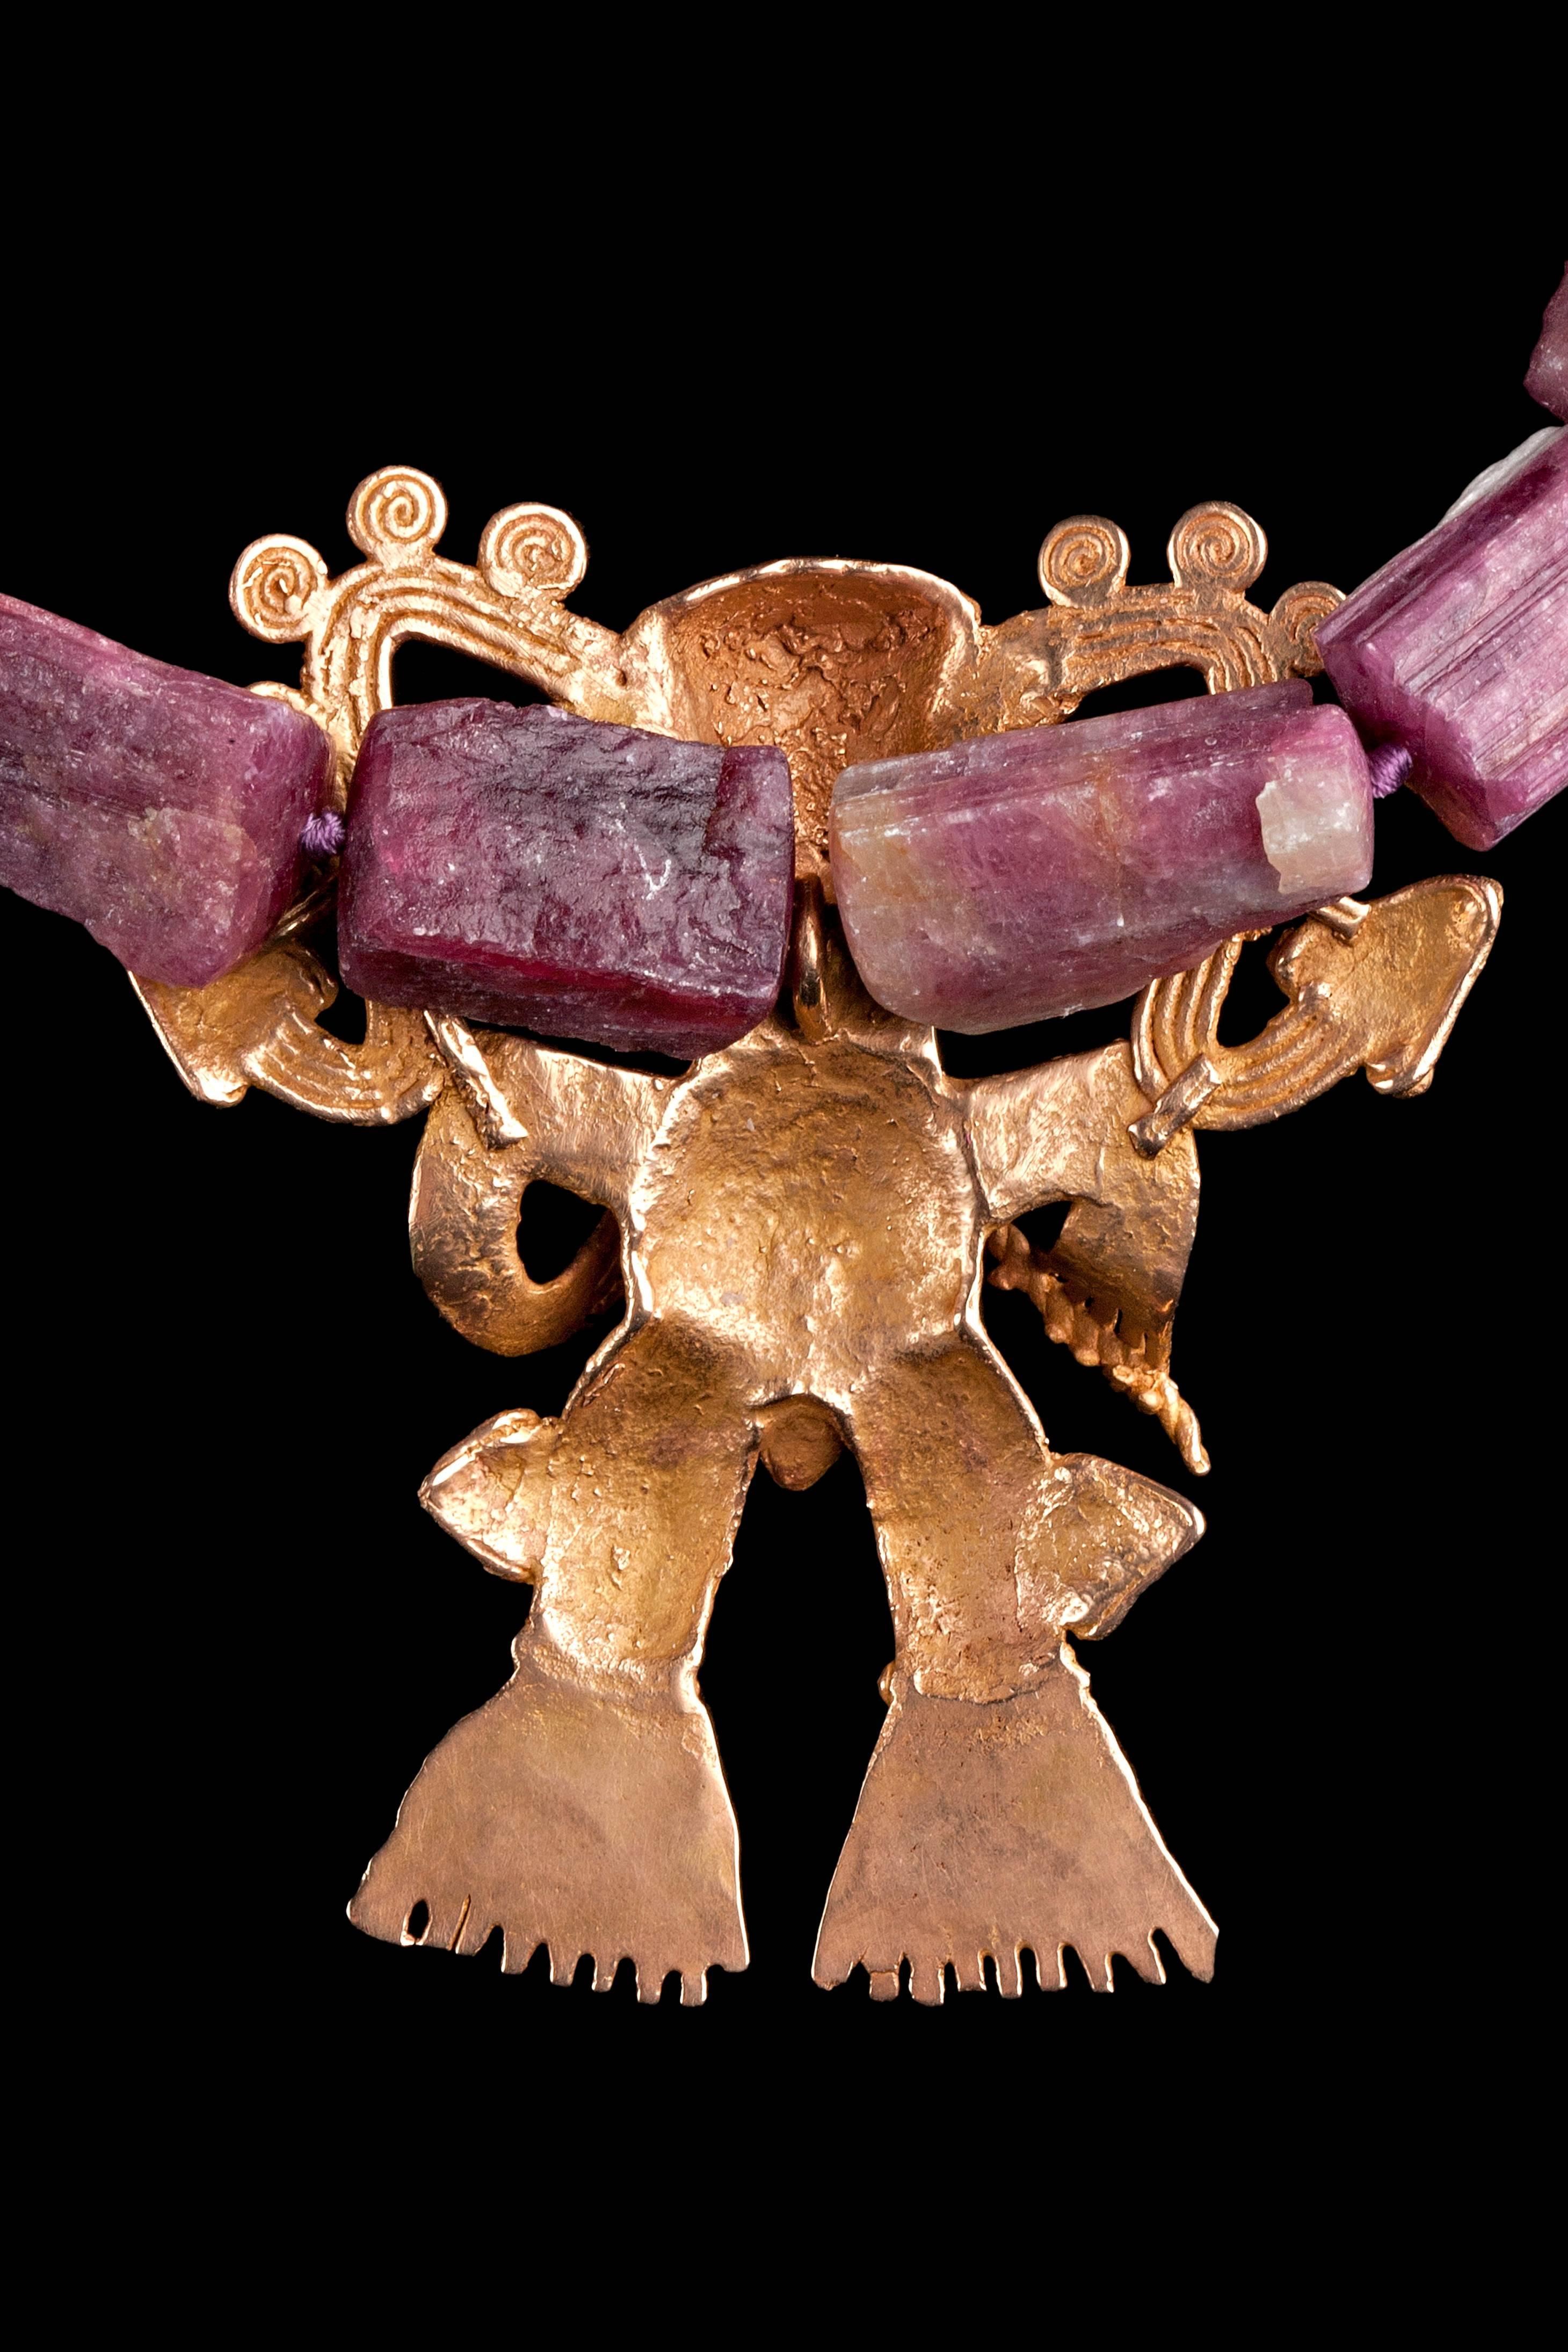 Natürliche rosafarbene Turmalin-Halskette (167 Gramm) mit seltener goldener Veraguas/Diquis-Überraschungstrommel Ca. 700 bis 1400 n. Chr. Sehr schönes Beispiel einer alten, präkolumbianischen Goldschmiedearbeit aus Mittelamerika, entweder Costa Rica